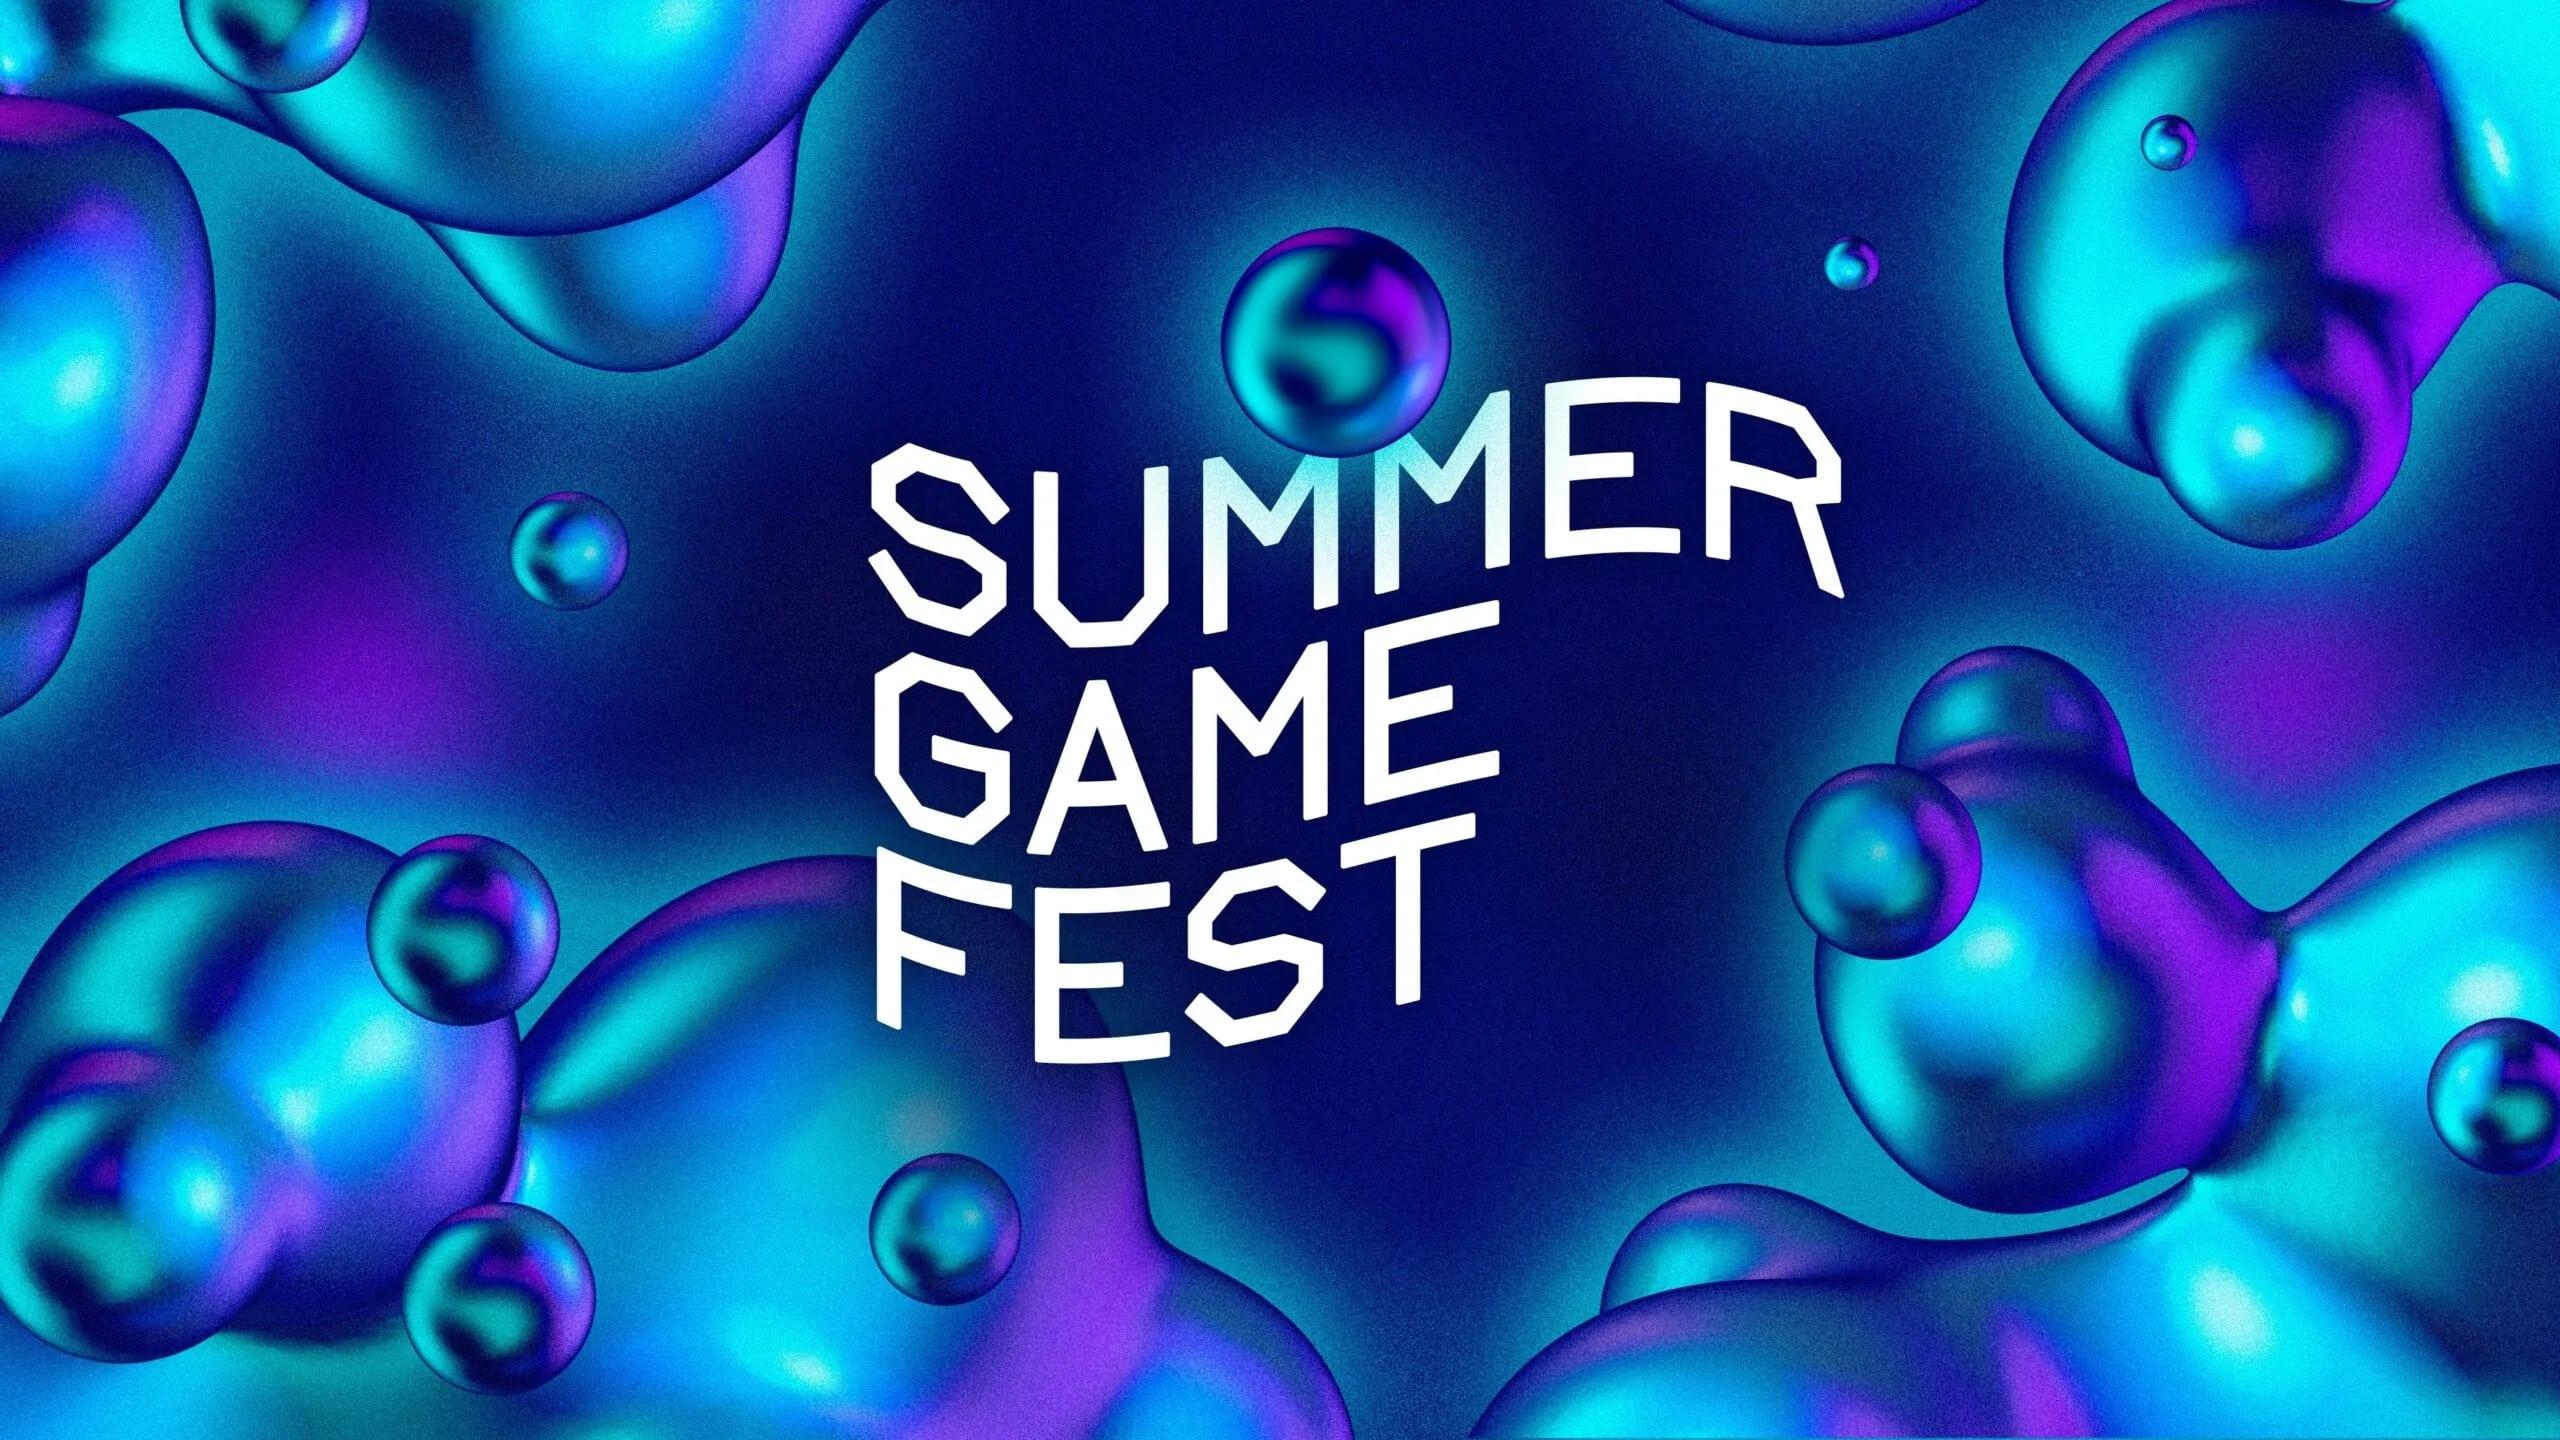 Summer Game Fest 2022 backdrop